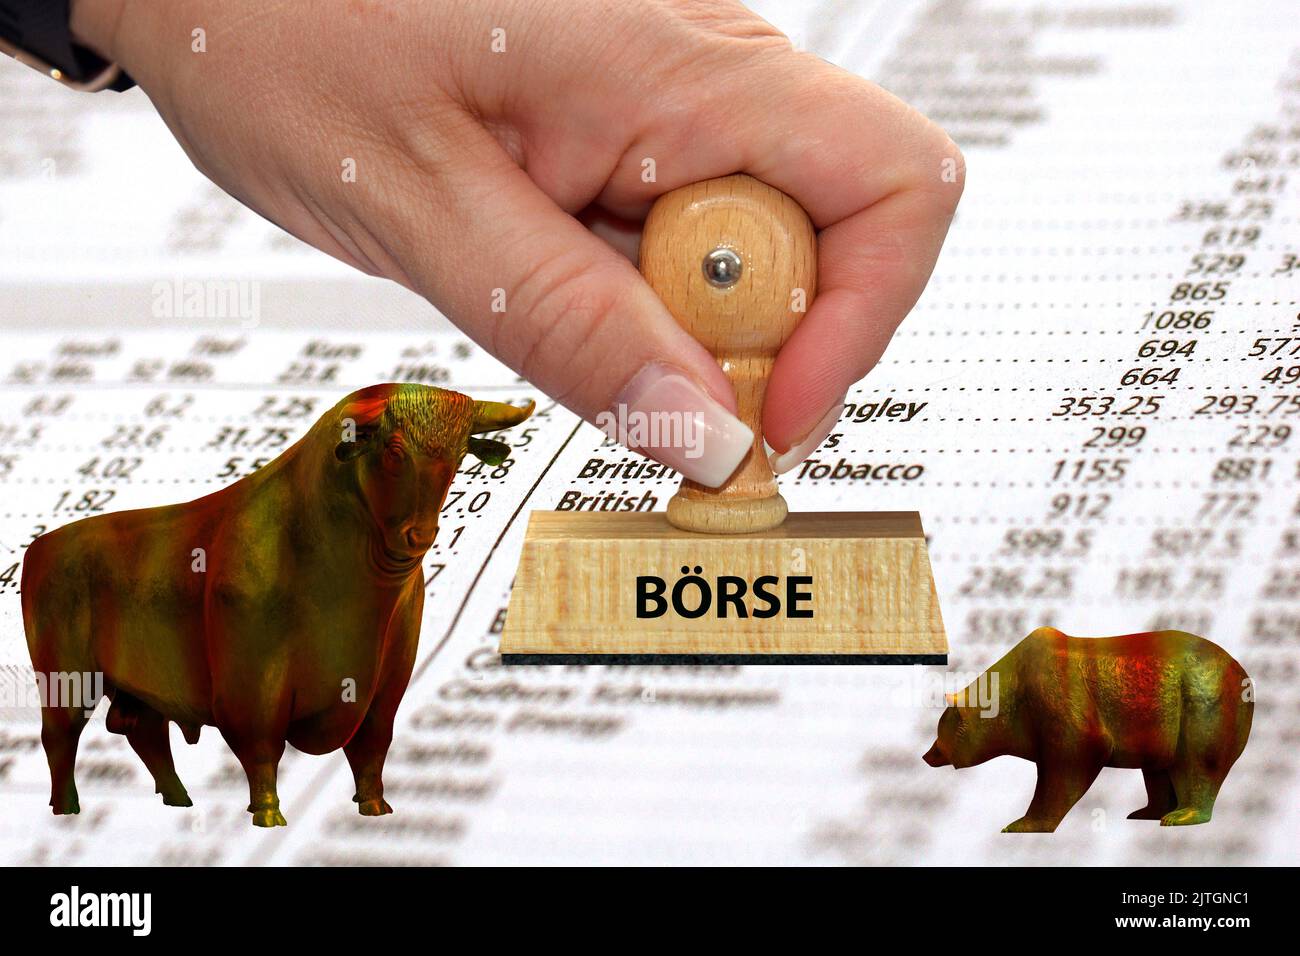 Francobollo 'Borsa, Boerse', toro e orso davanti al giornale con i prezzi delle azioni Foto Stock